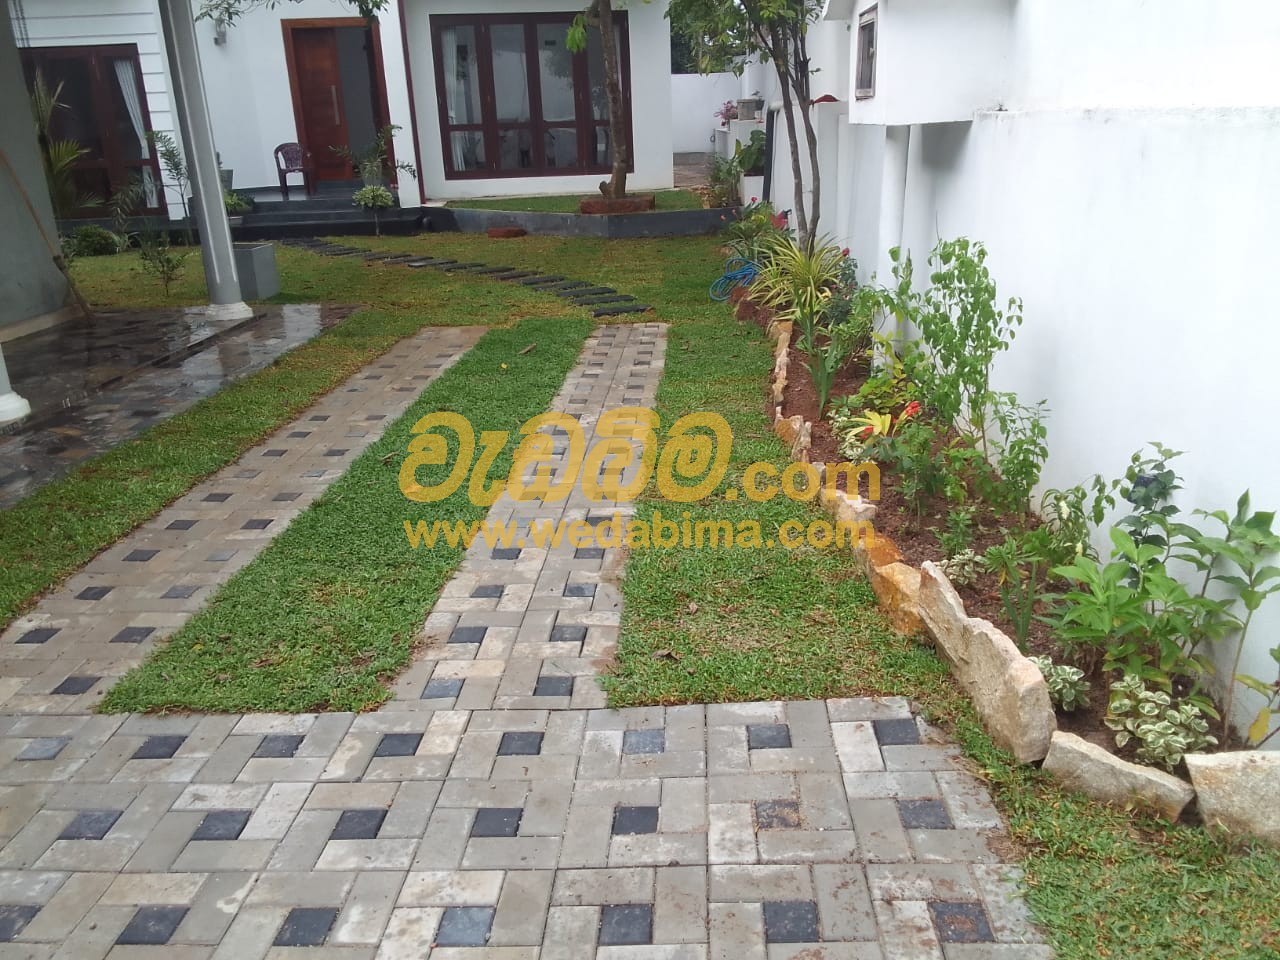 Cover image for Landscape Contractors in Sri Lanka